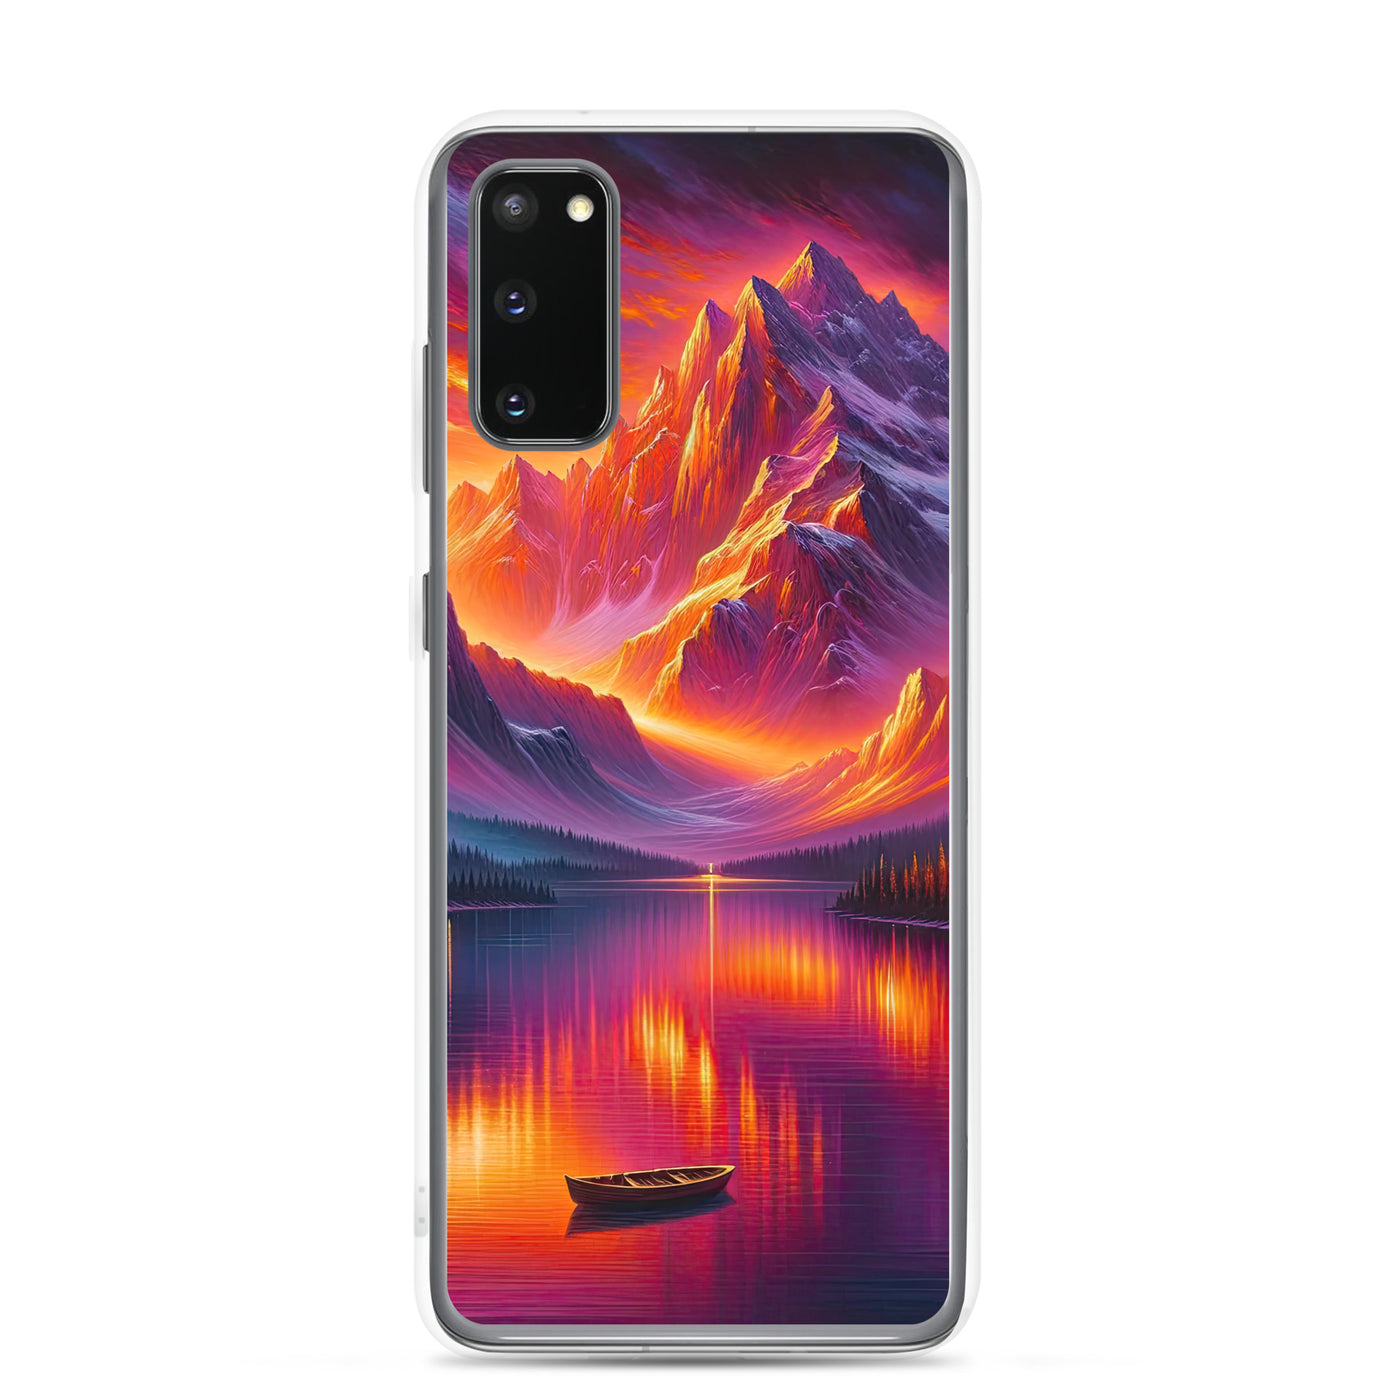 Ölgemälde eines Bootes auf einem Bergsee bei Sonnenuntergang, lebendige Orange-Lila Töne - Samsung Schutzhülle (durchsichtig) berge xxx yyy zzz Samsung Galaxy S20